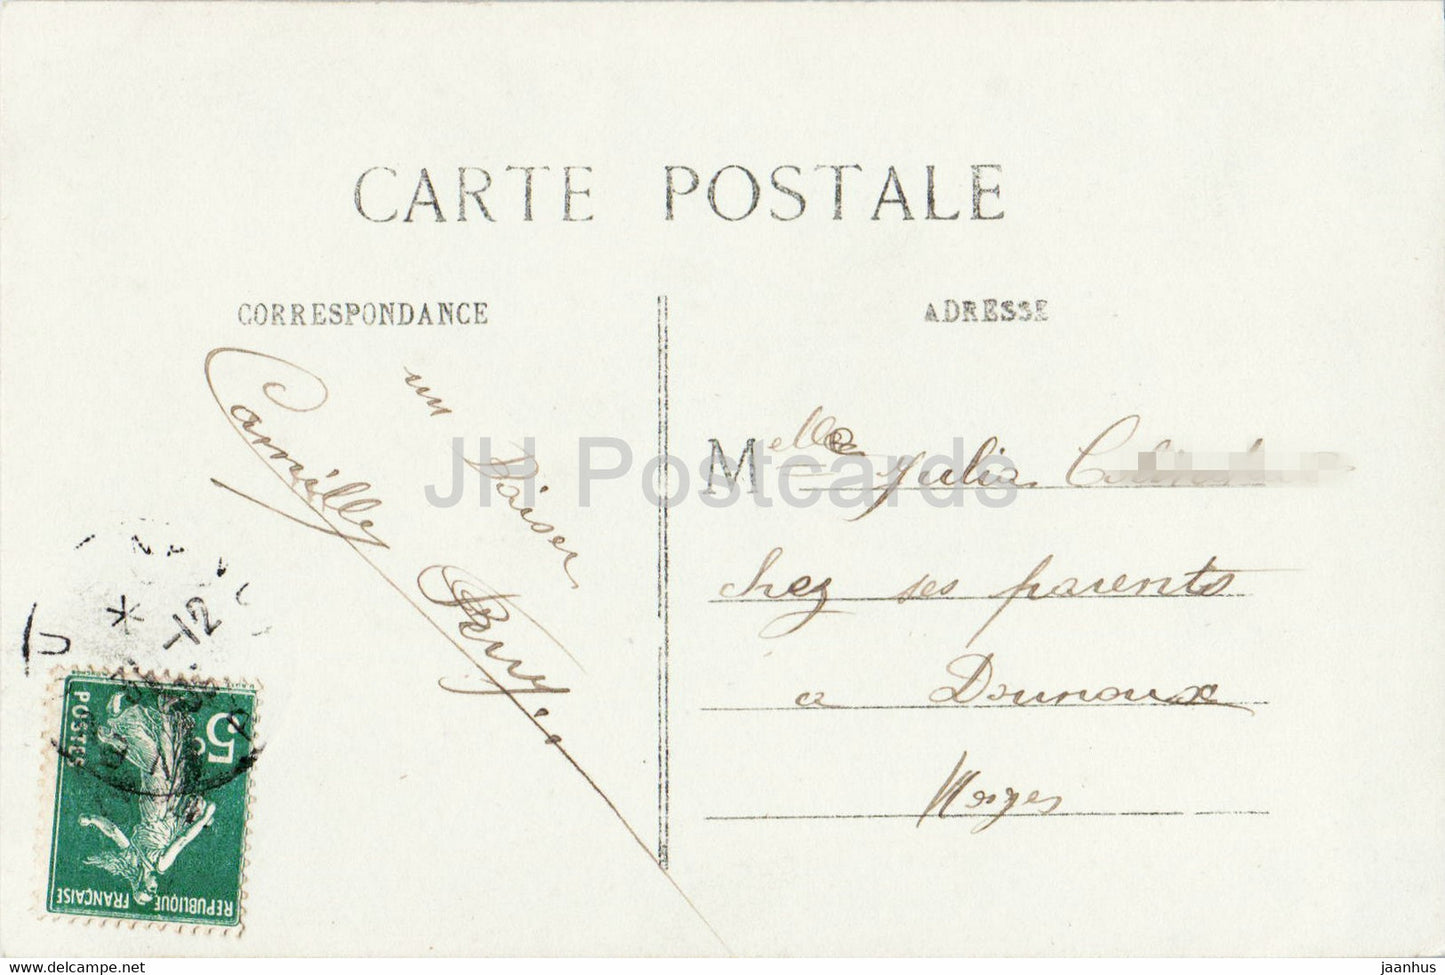 Carte de voeux Nouvel An - Bonne Annee - Meilleurs Voeux - homme - 839 - OTO - carte postale ancienne - France - occasion